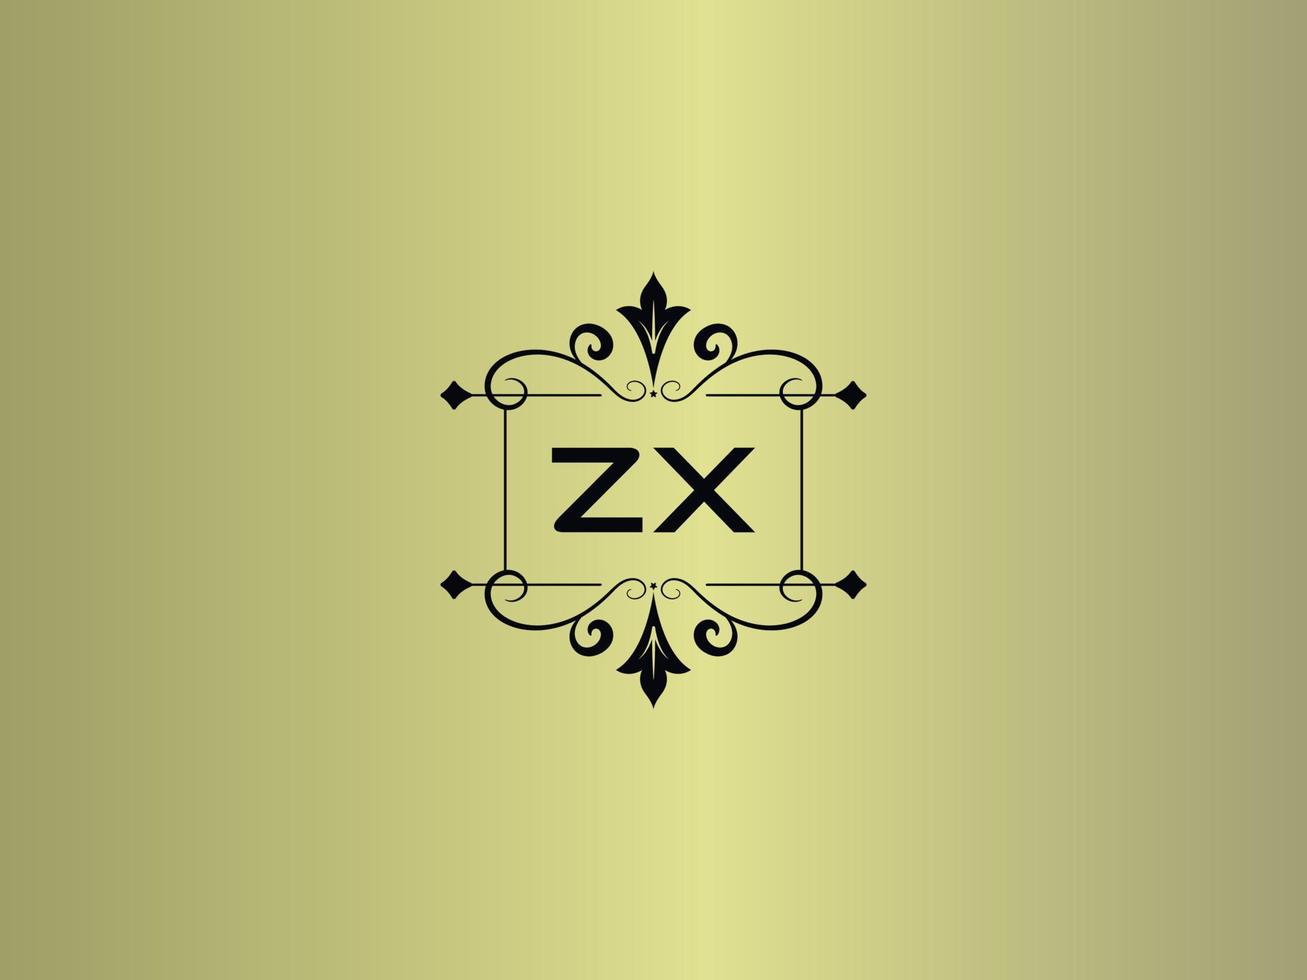 kreatives zx-logobild, erstklassiges zx-luxusbriefdesign vektor